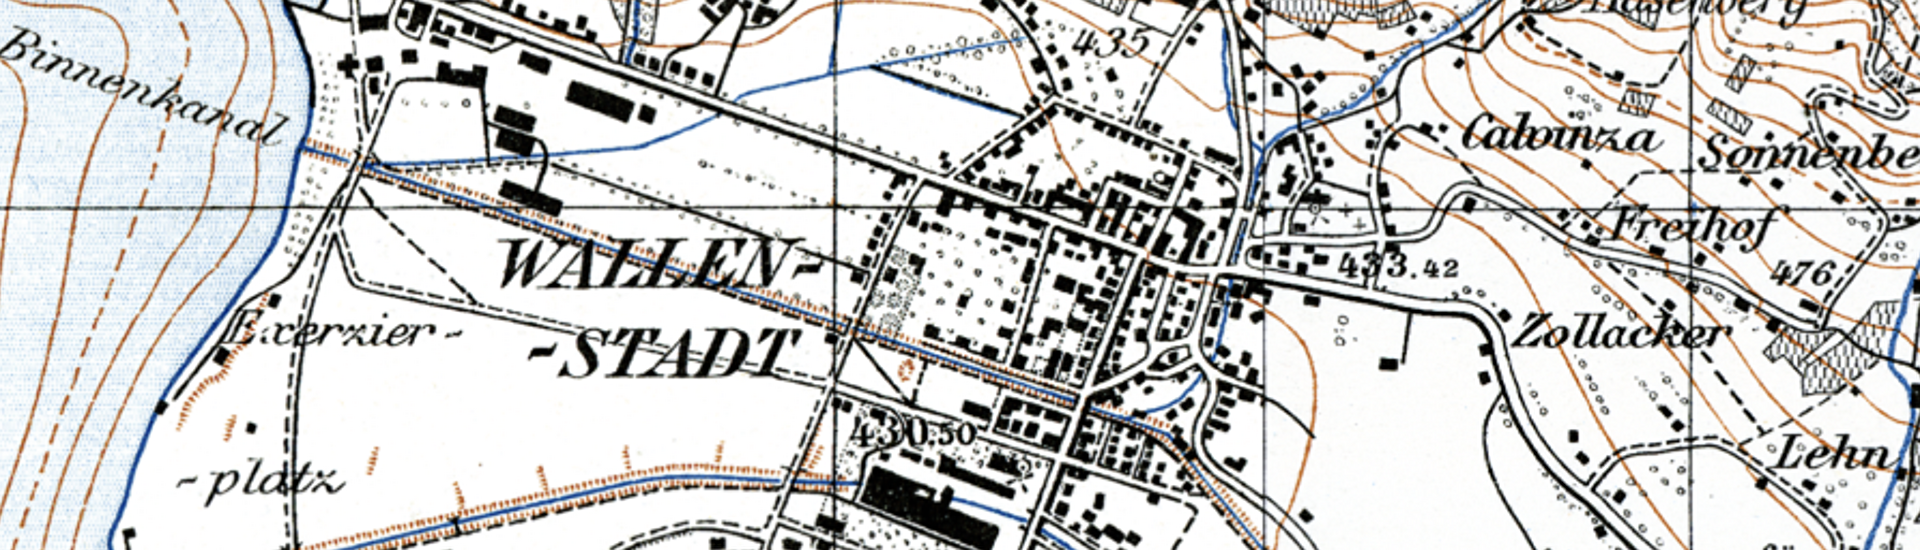 Karte Walenstadt 1953